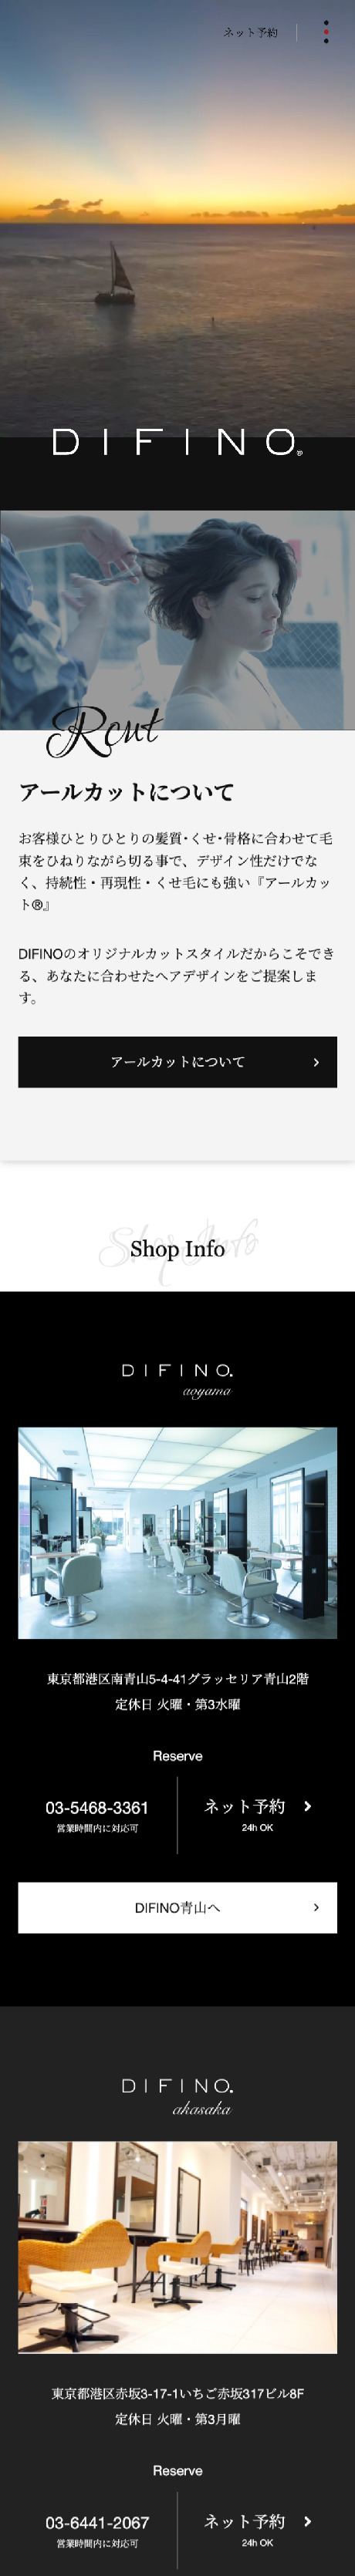 DIFINOグループサイトトップのスマホデザイン画像